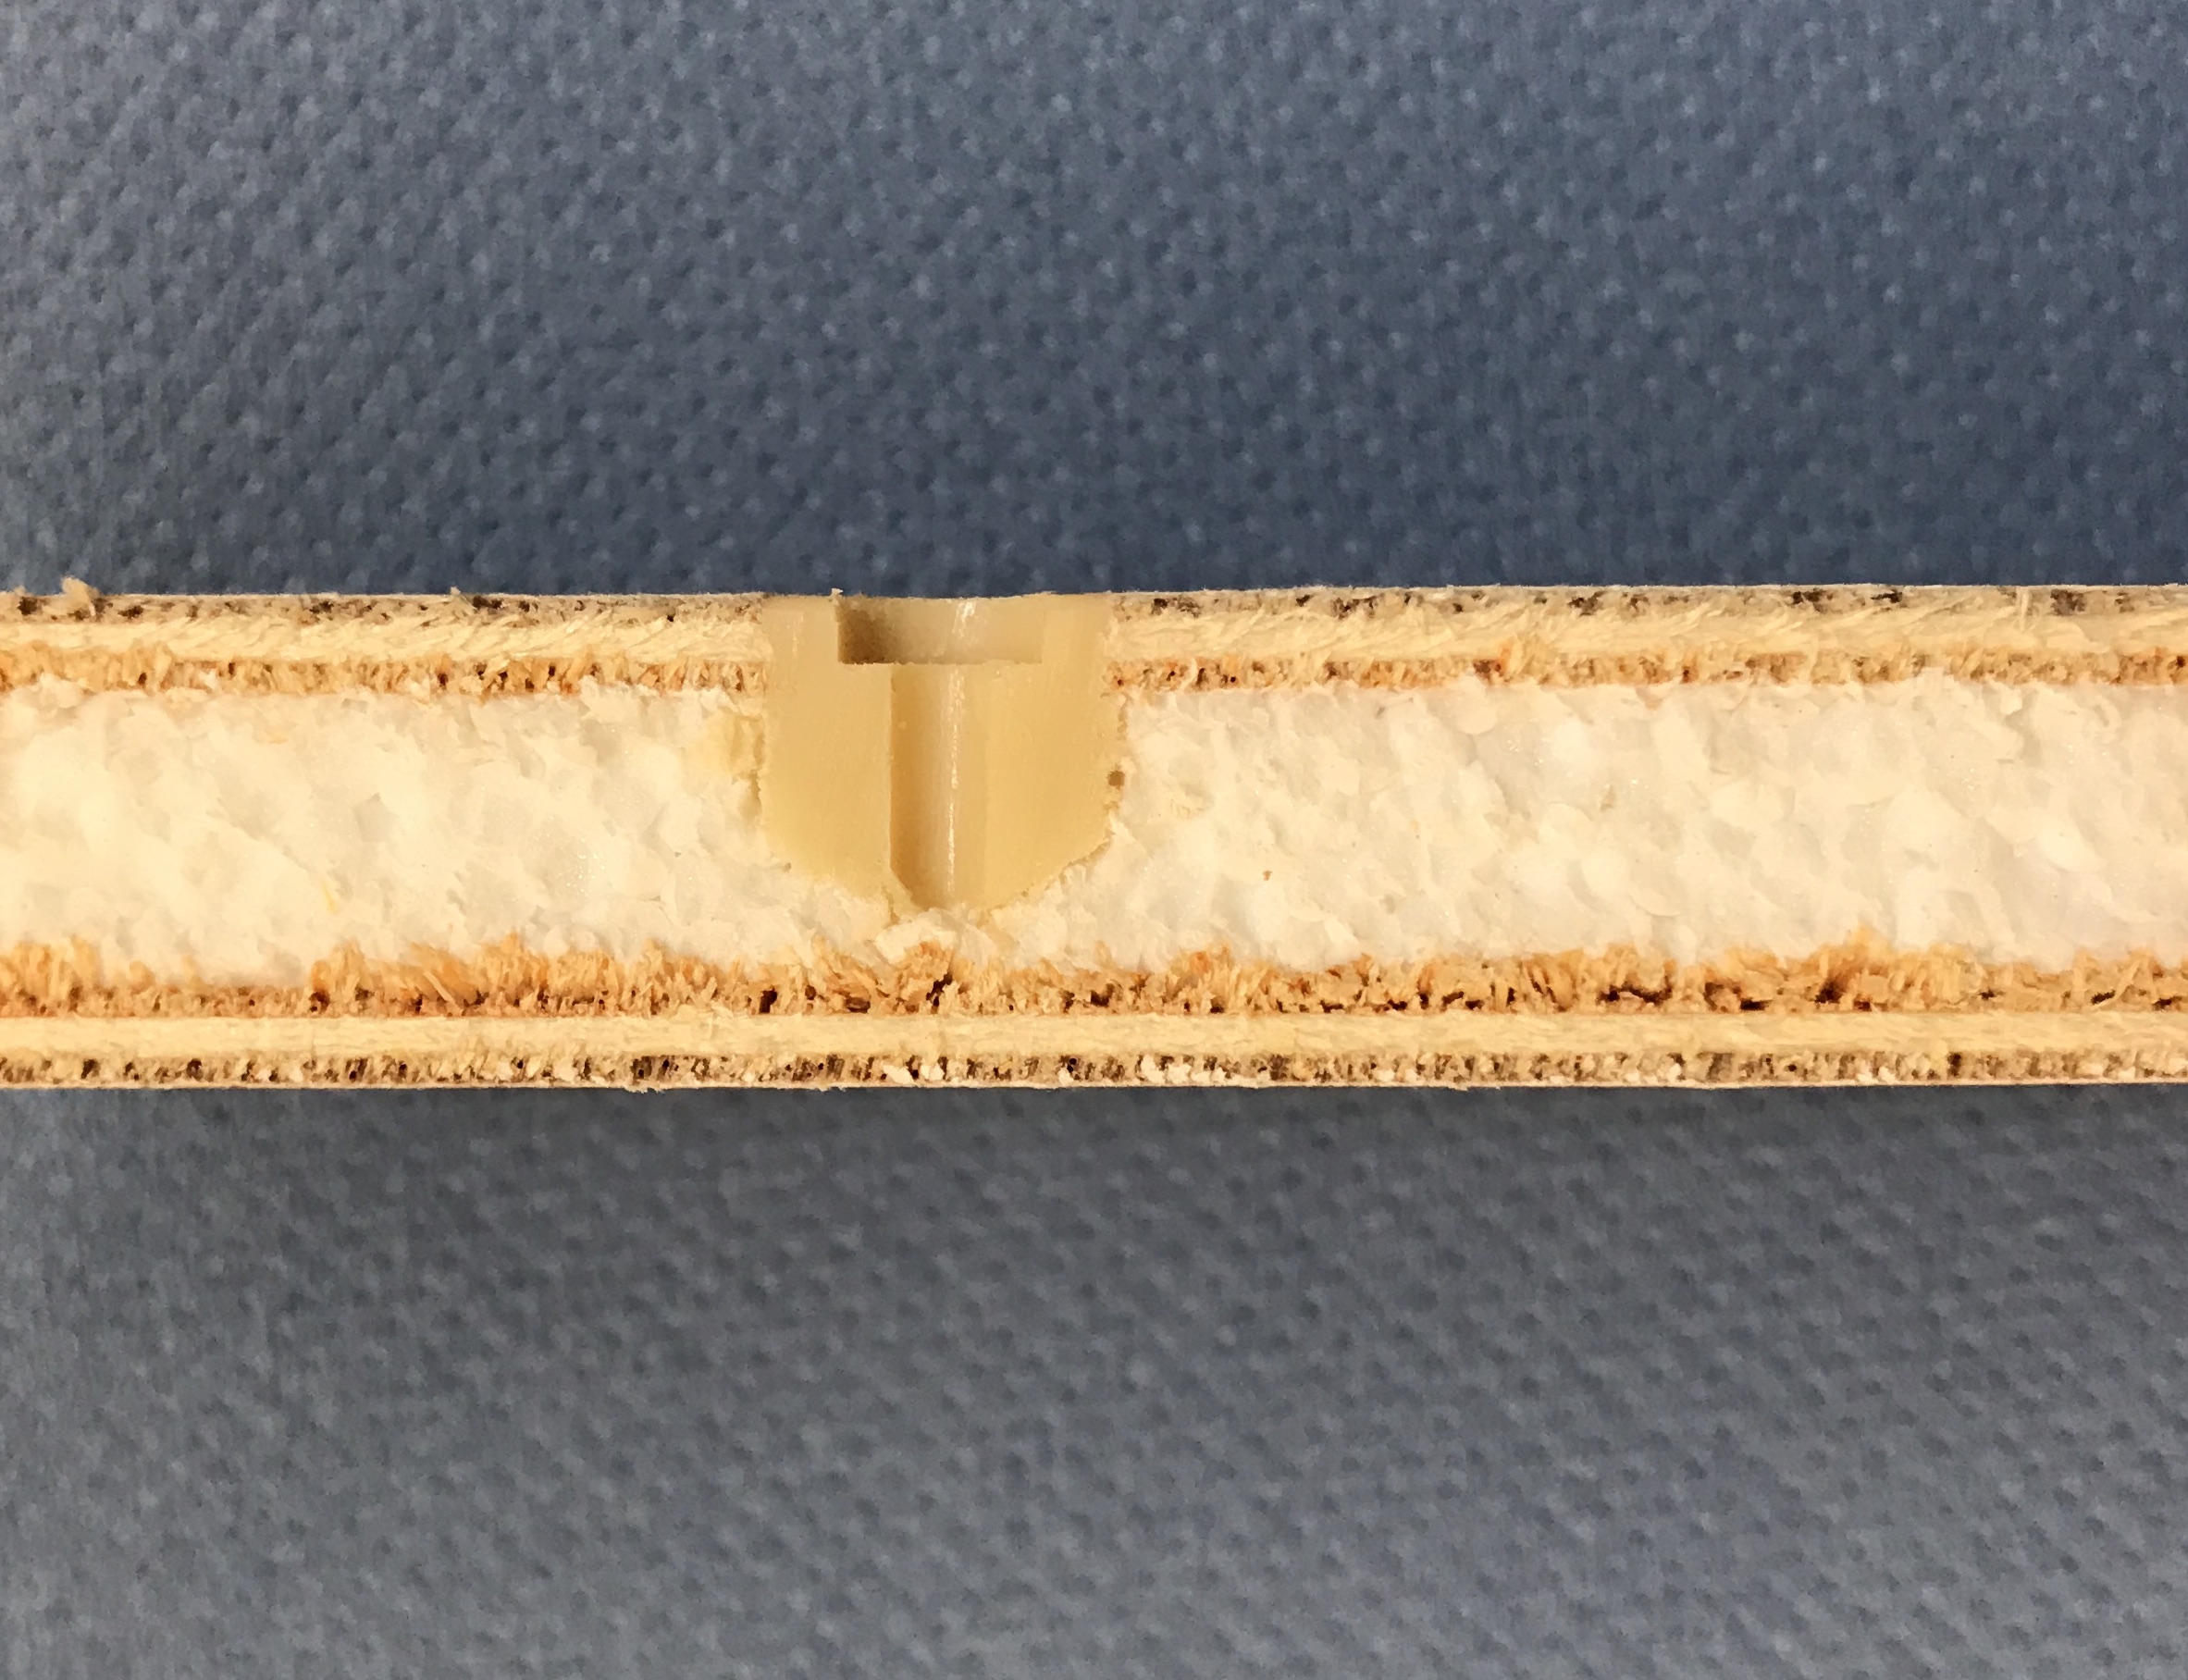 Sandwichplatte mit eingespritzter Verstärkung mittels Polyuera-Klebstoff